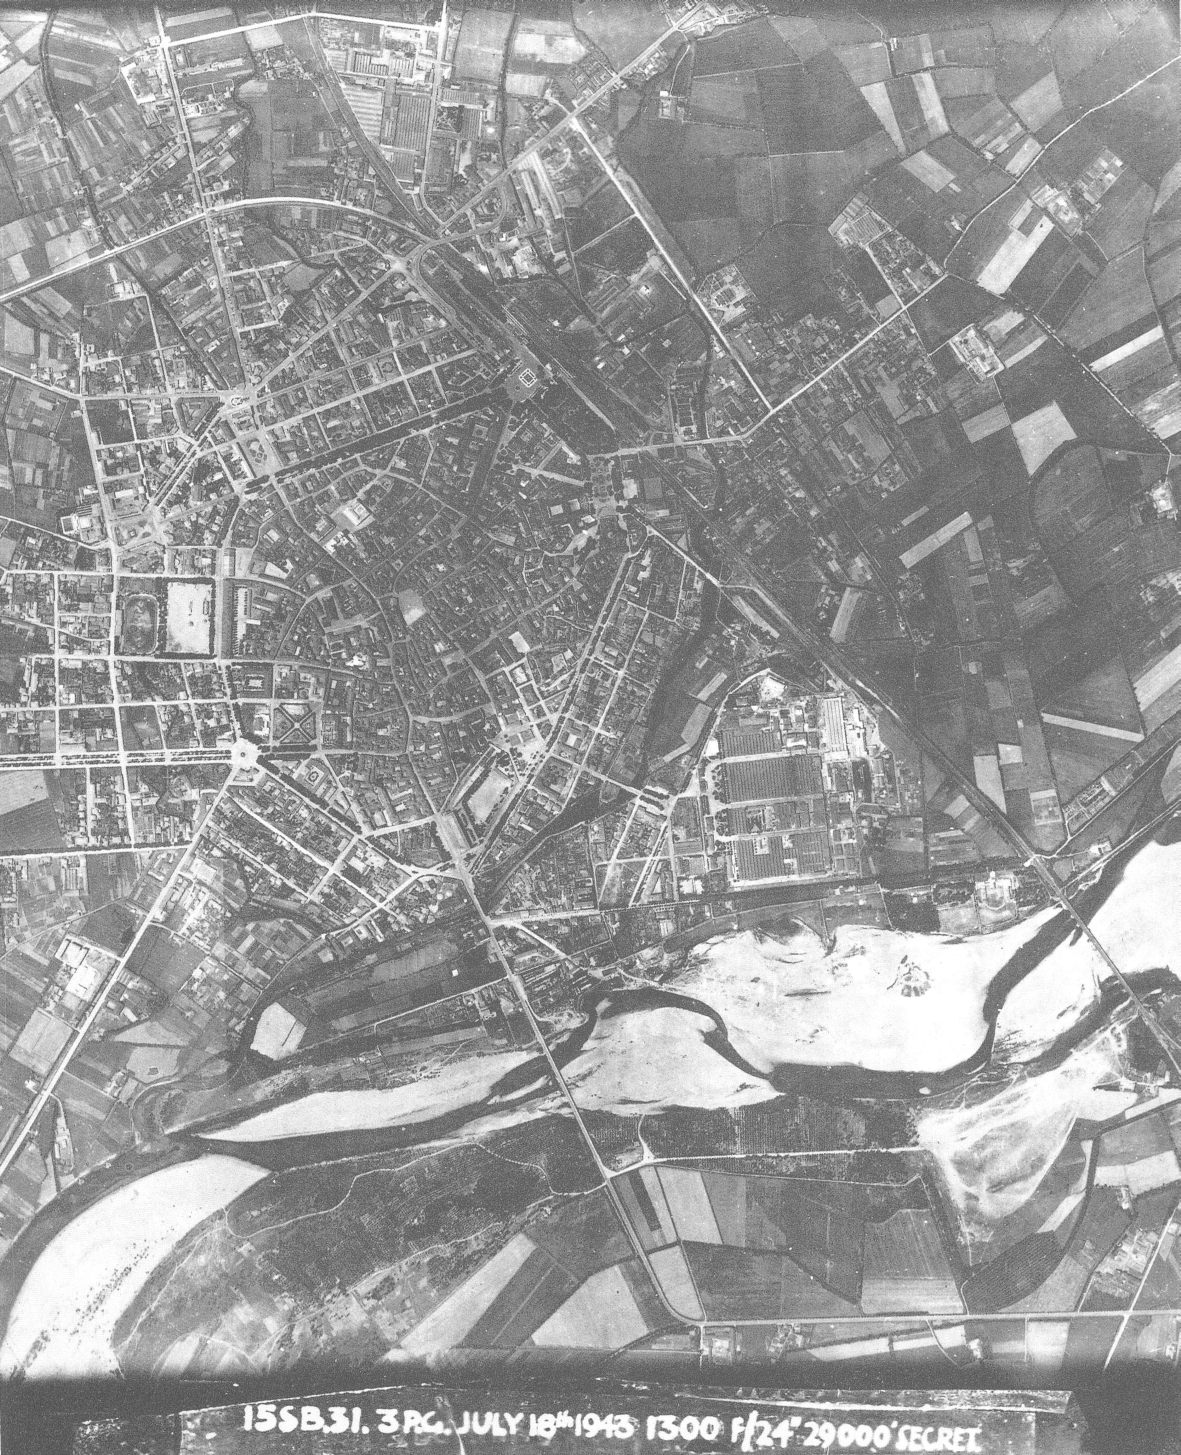 Foto della ricognizione aerea RAF del 18 luglio 1943